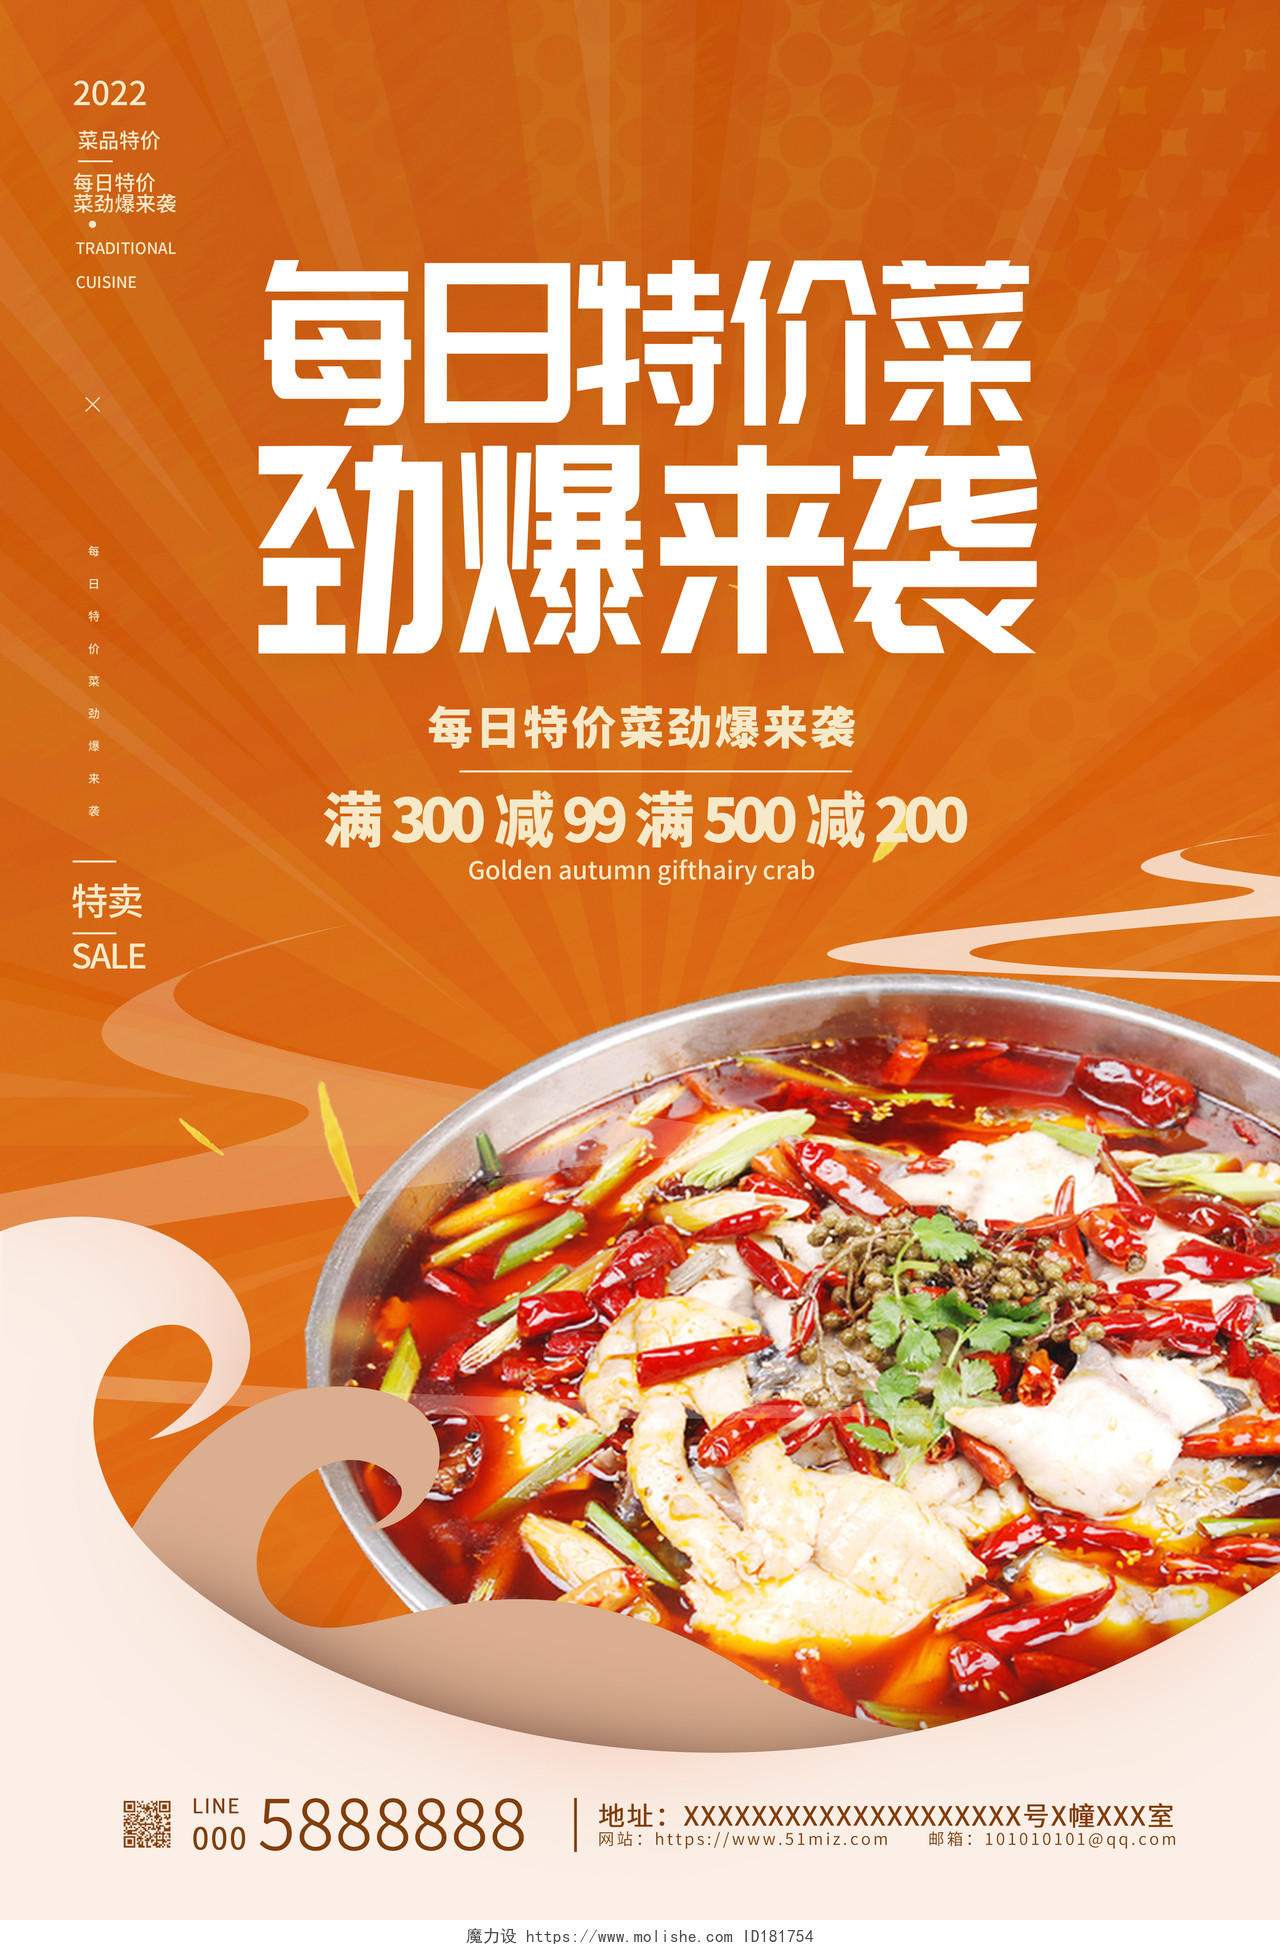 橙色传统每日特价菜劲爆来袭特价菜宣传海报设计